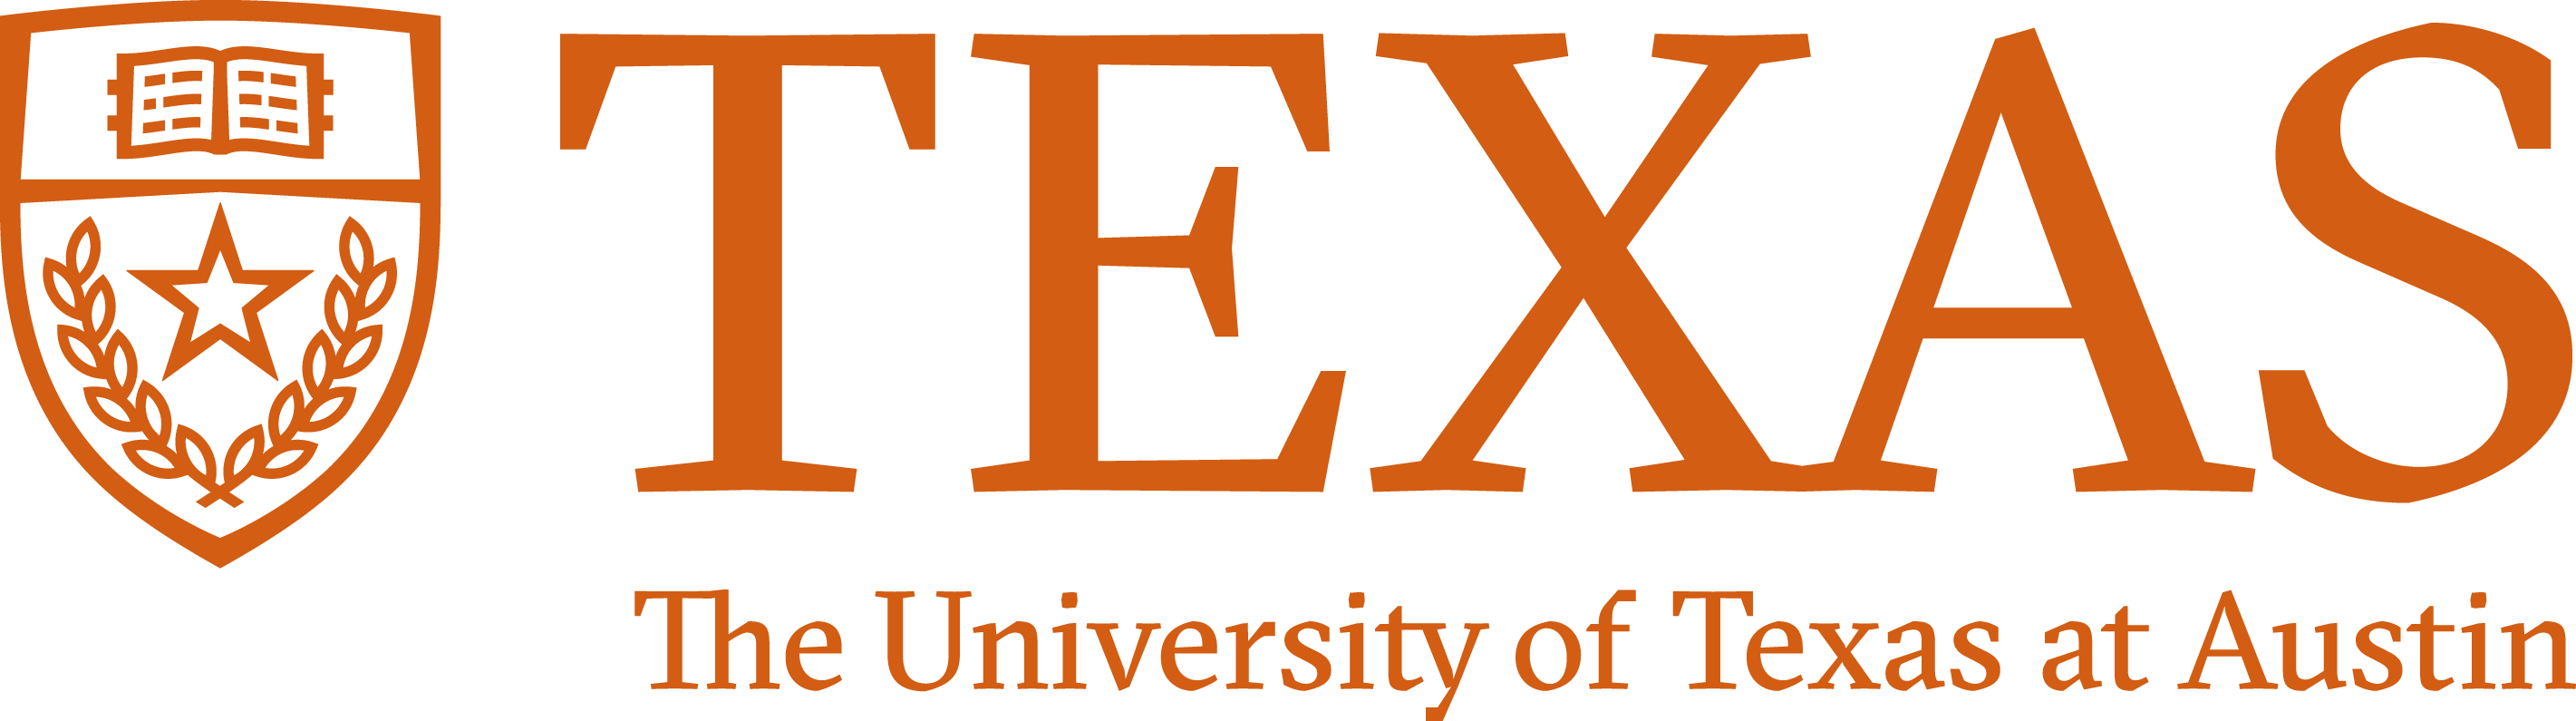 텍사스 대학교 오스틴 로고 – STAR 네트워크